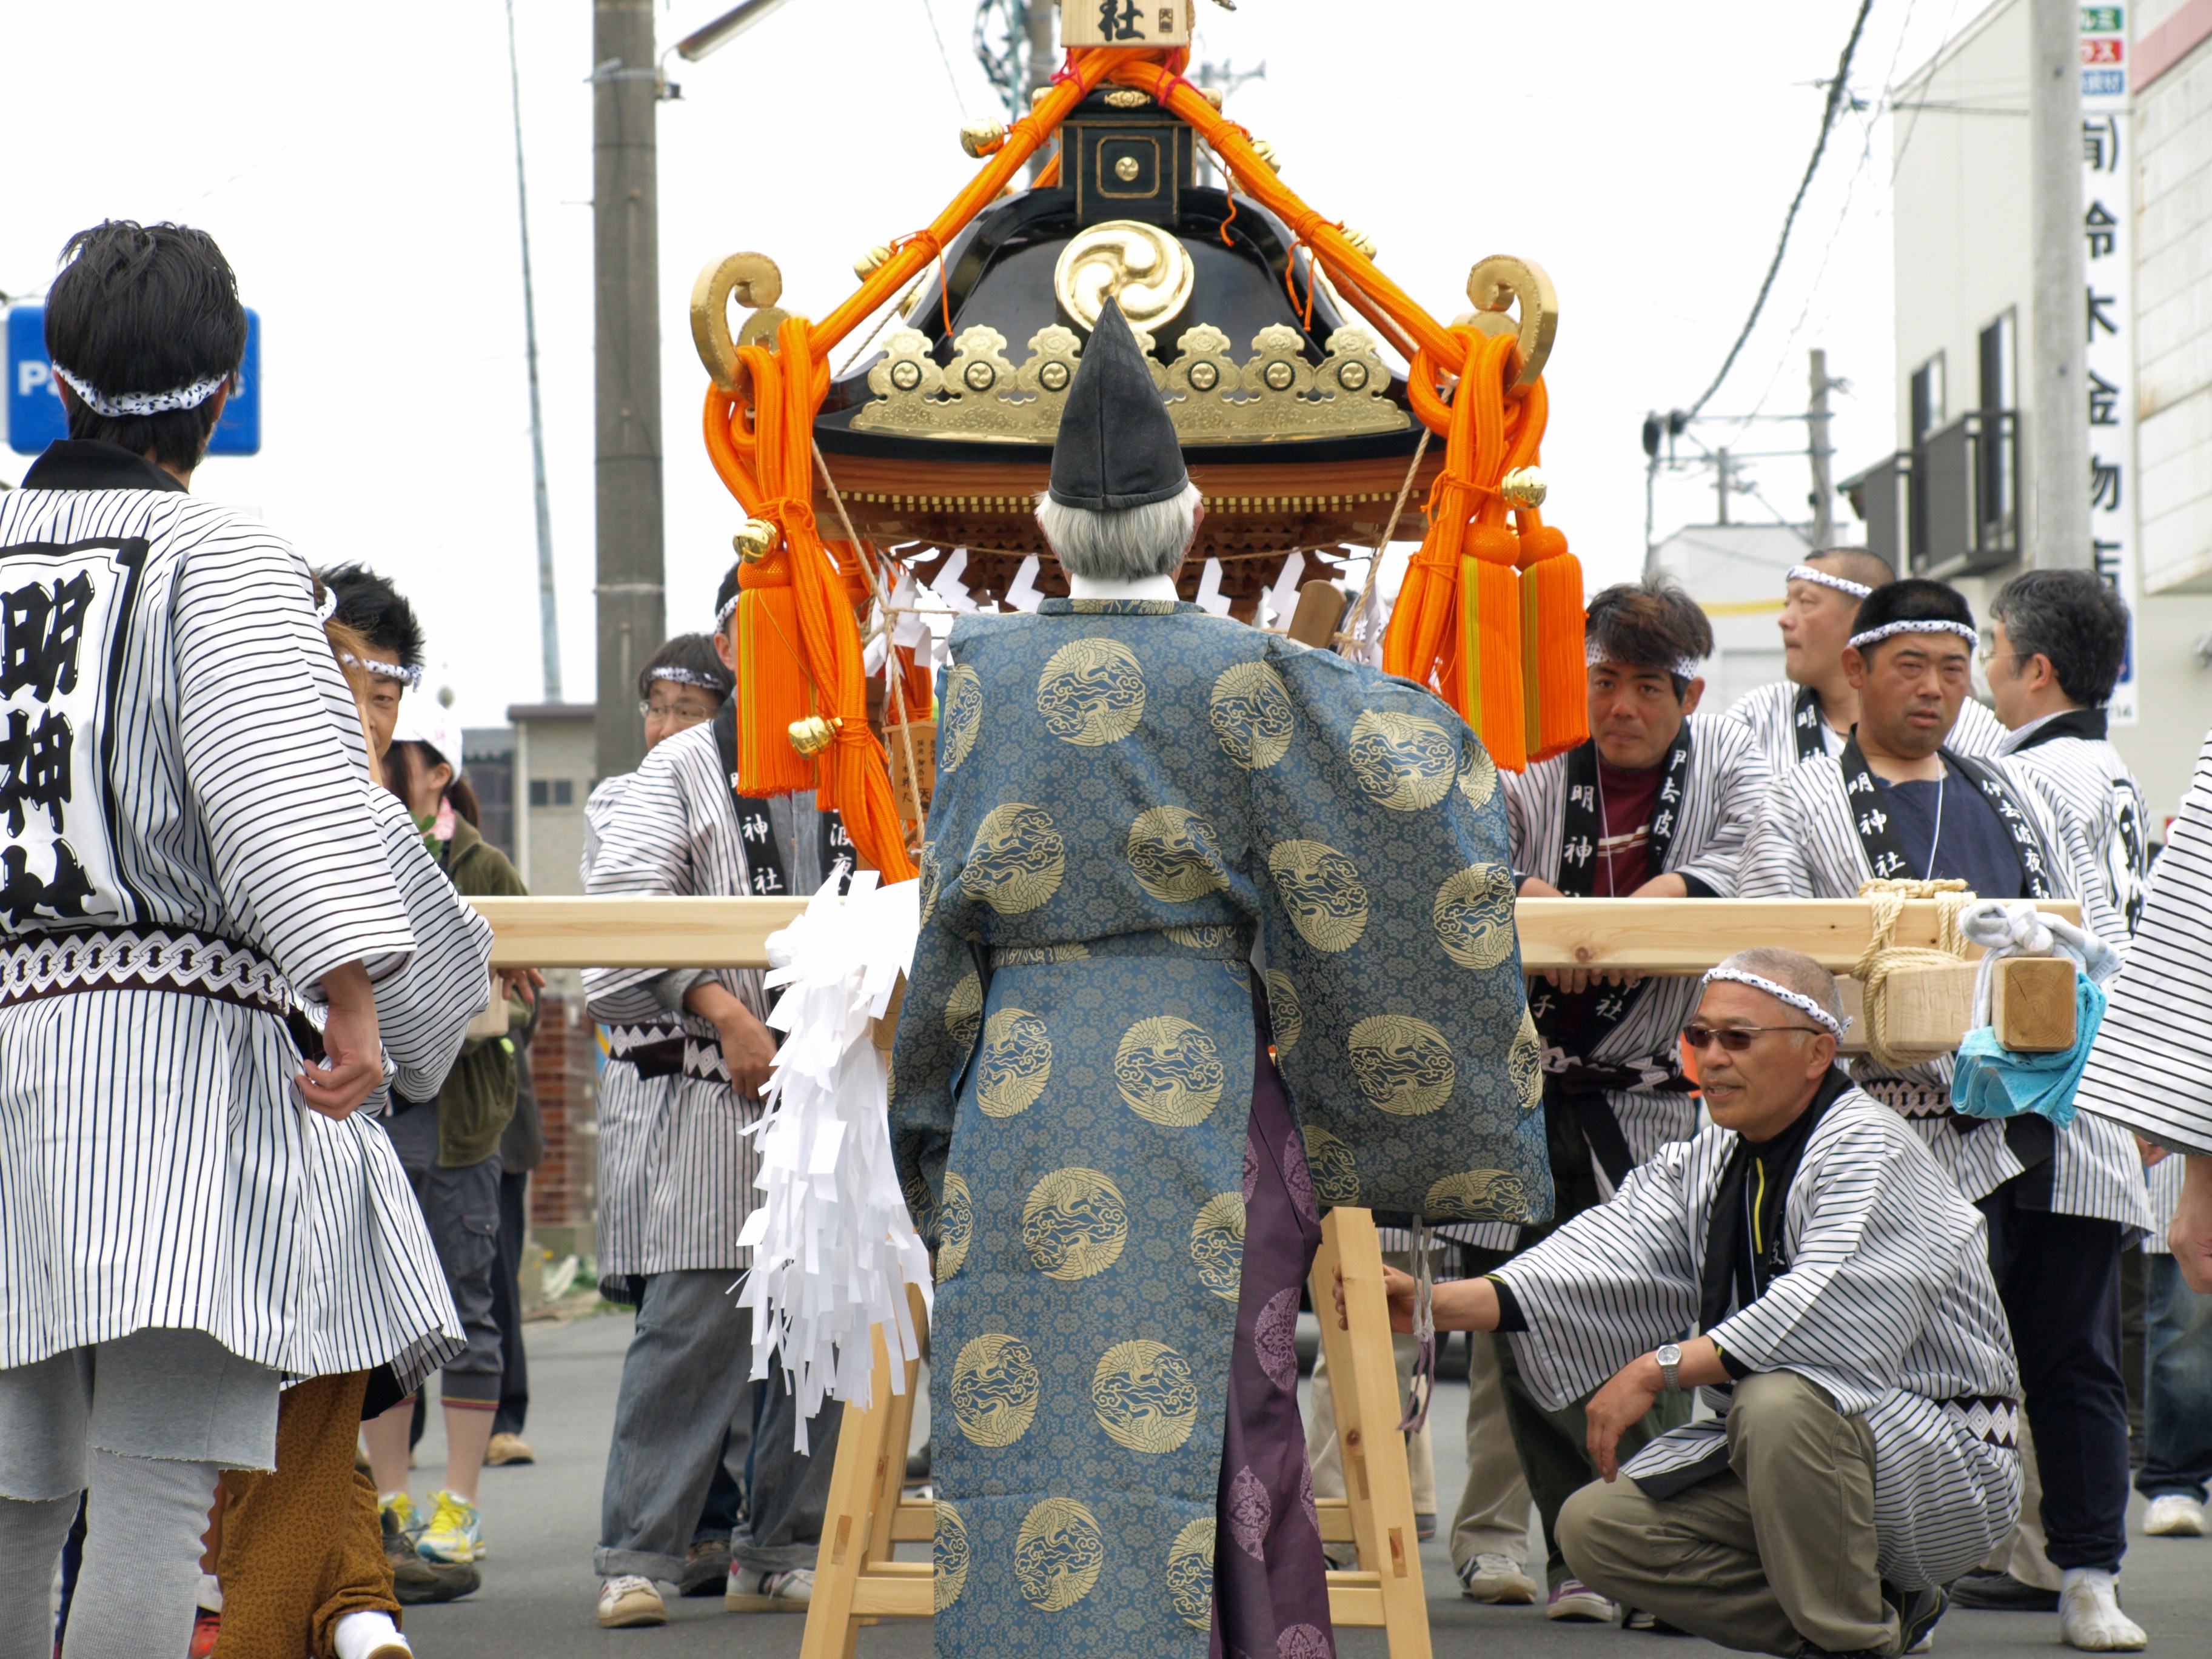 明神社のお祭り